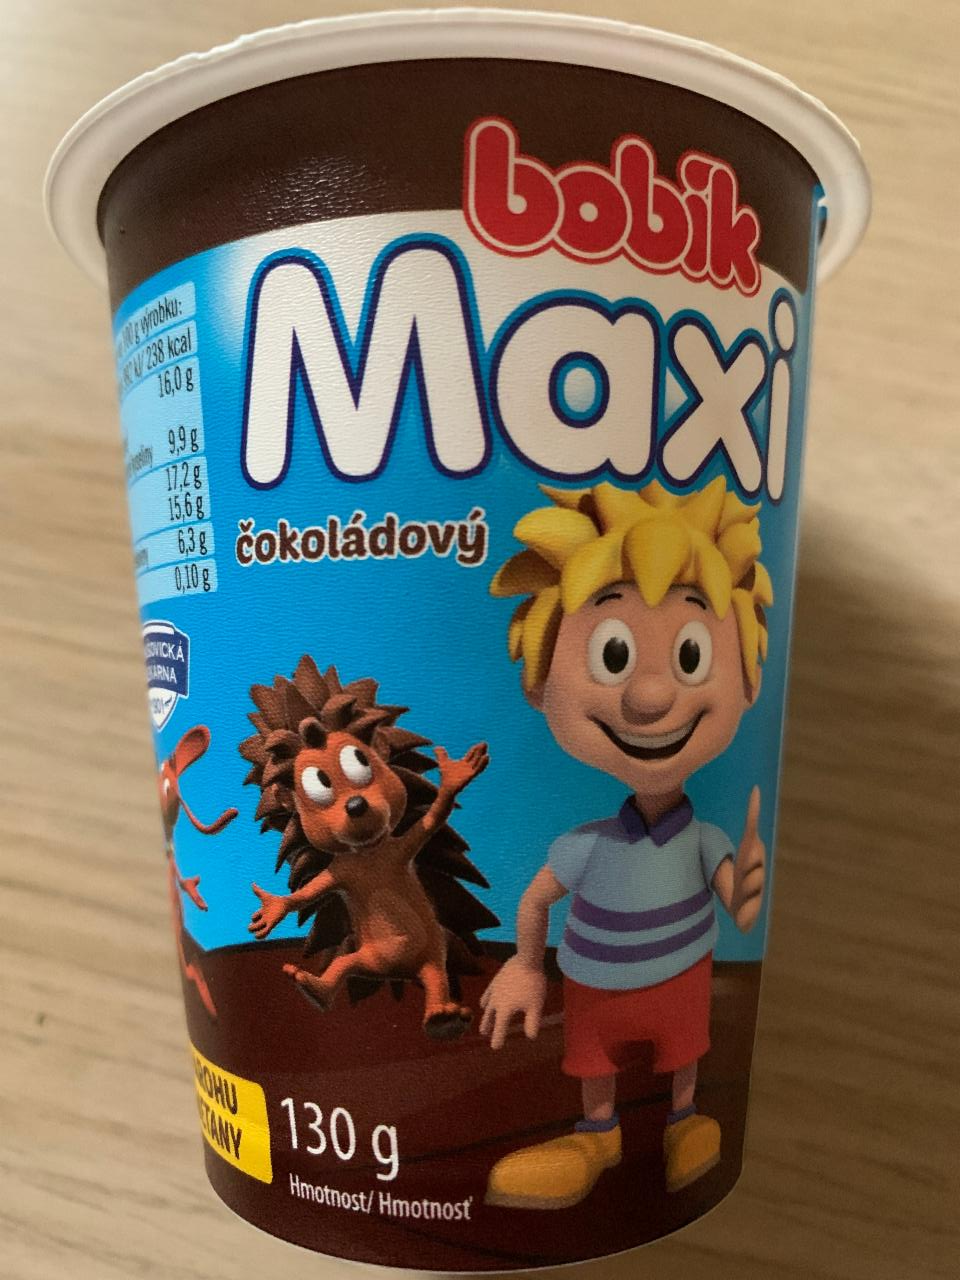 Fotografie - Bobík maxi čokoládový